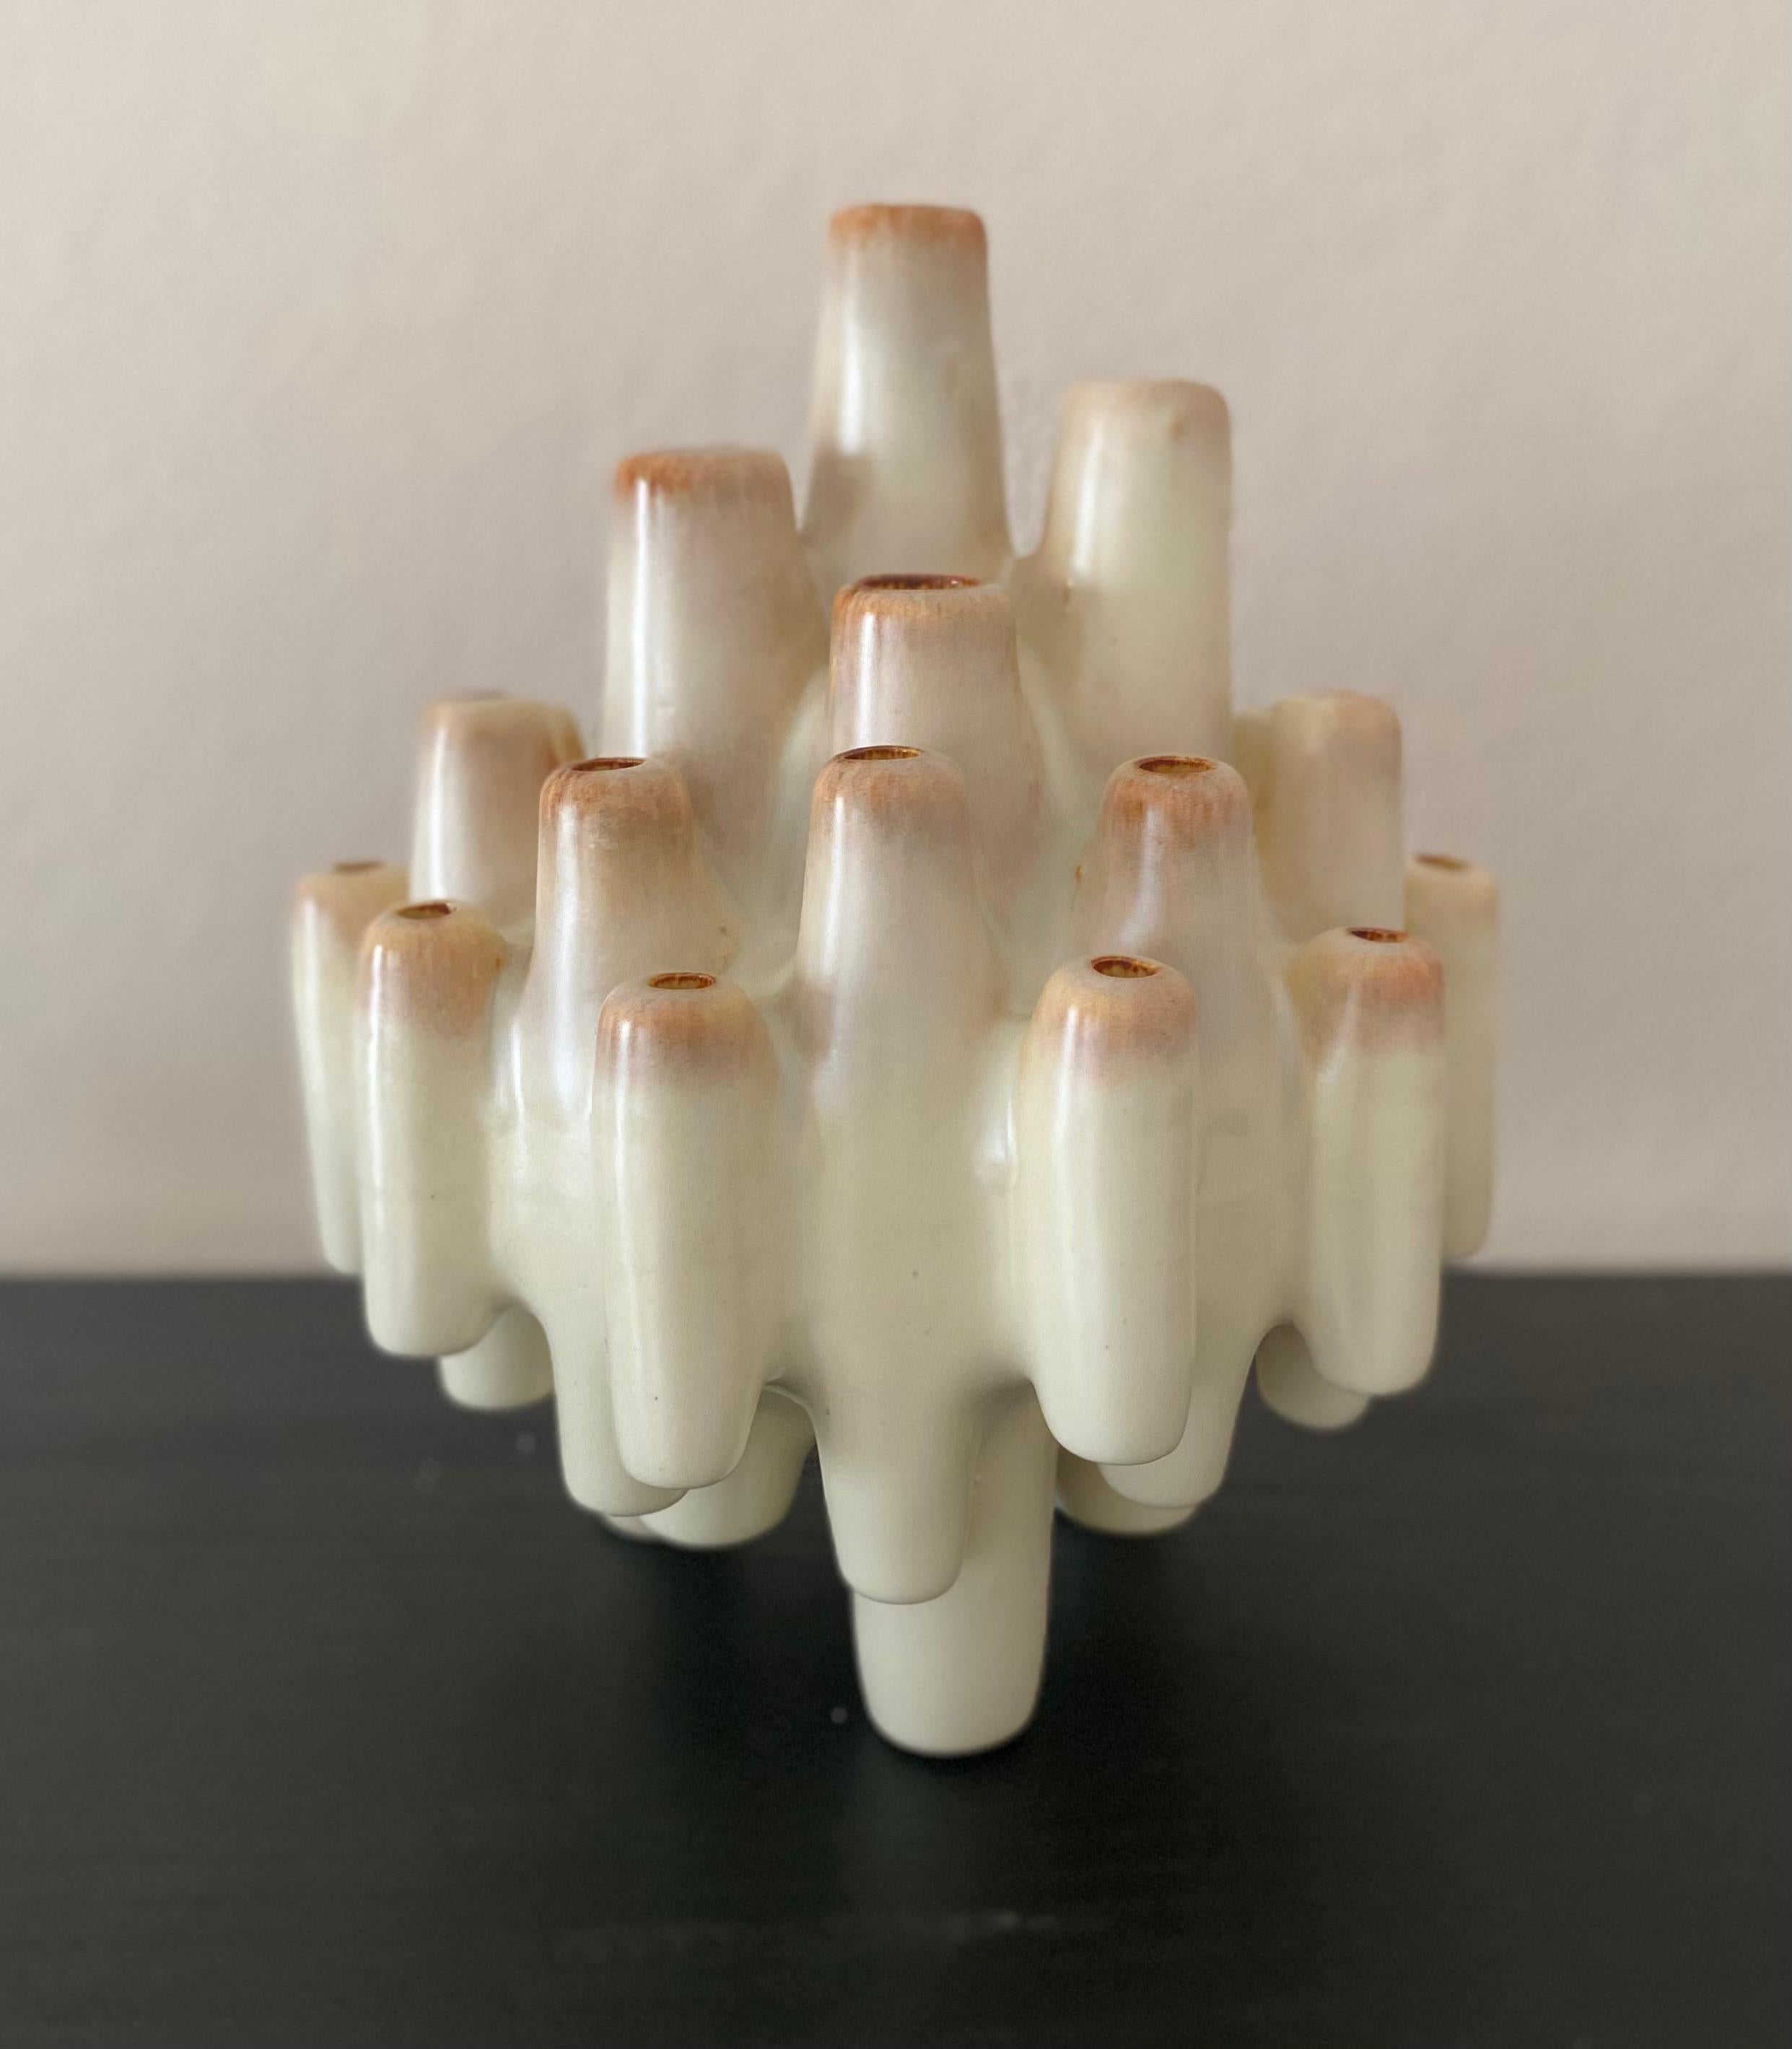 Remontez le temps jusqu'à l'atmosphère artistique des années 1960 avec ce remarquable vase sculptural en pique fleurs, fabriqué à la main par Bertoncello Ceramiche D'Arte en Italie. Ce vase, orné de teintes brunes, blanches, beiges et de cheminée,